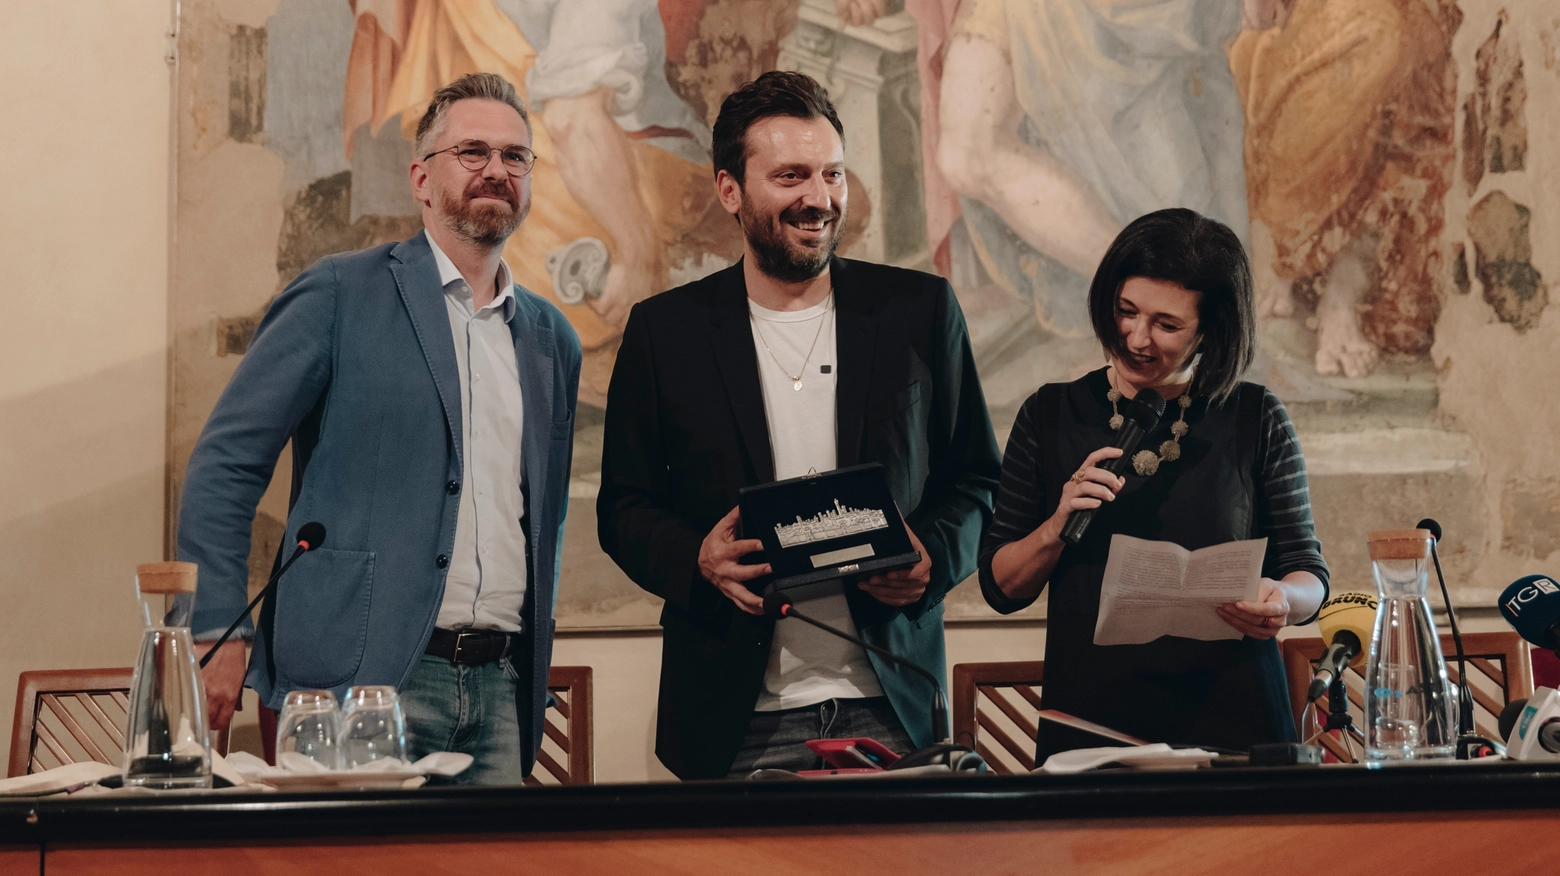 L'occasione è la conferenza stampa dedicata ai portici di San Luca a Bologna, per la seconda edizione del festival omonimo, segnata da un progetto firmato proprio dall'ex cantante dei Lùnapop